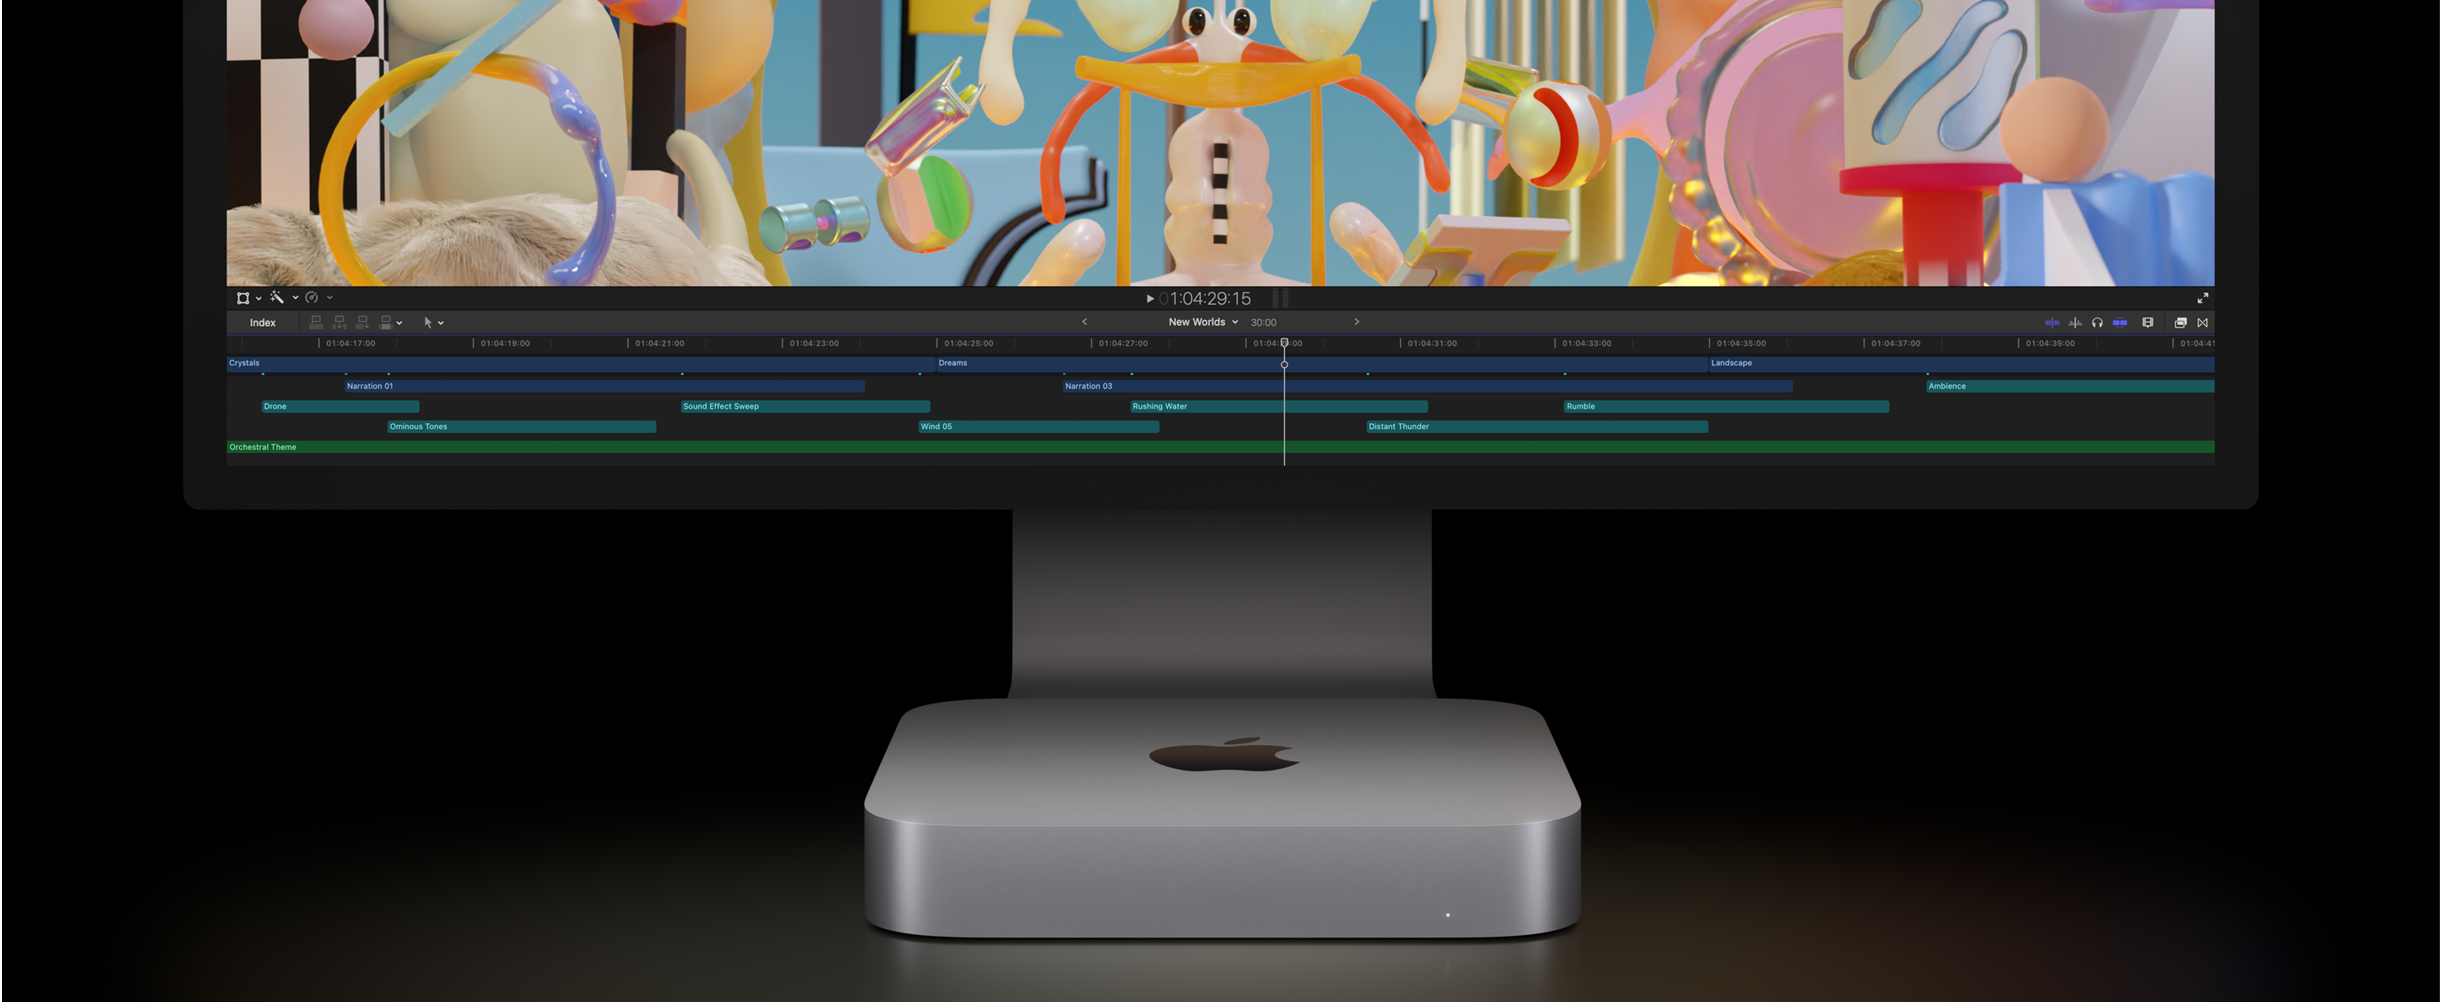 Näkymä edestä Mac ministä ja Studio Displaysta, näytöllä videoeditointiprojekti Final Cut Prossa.